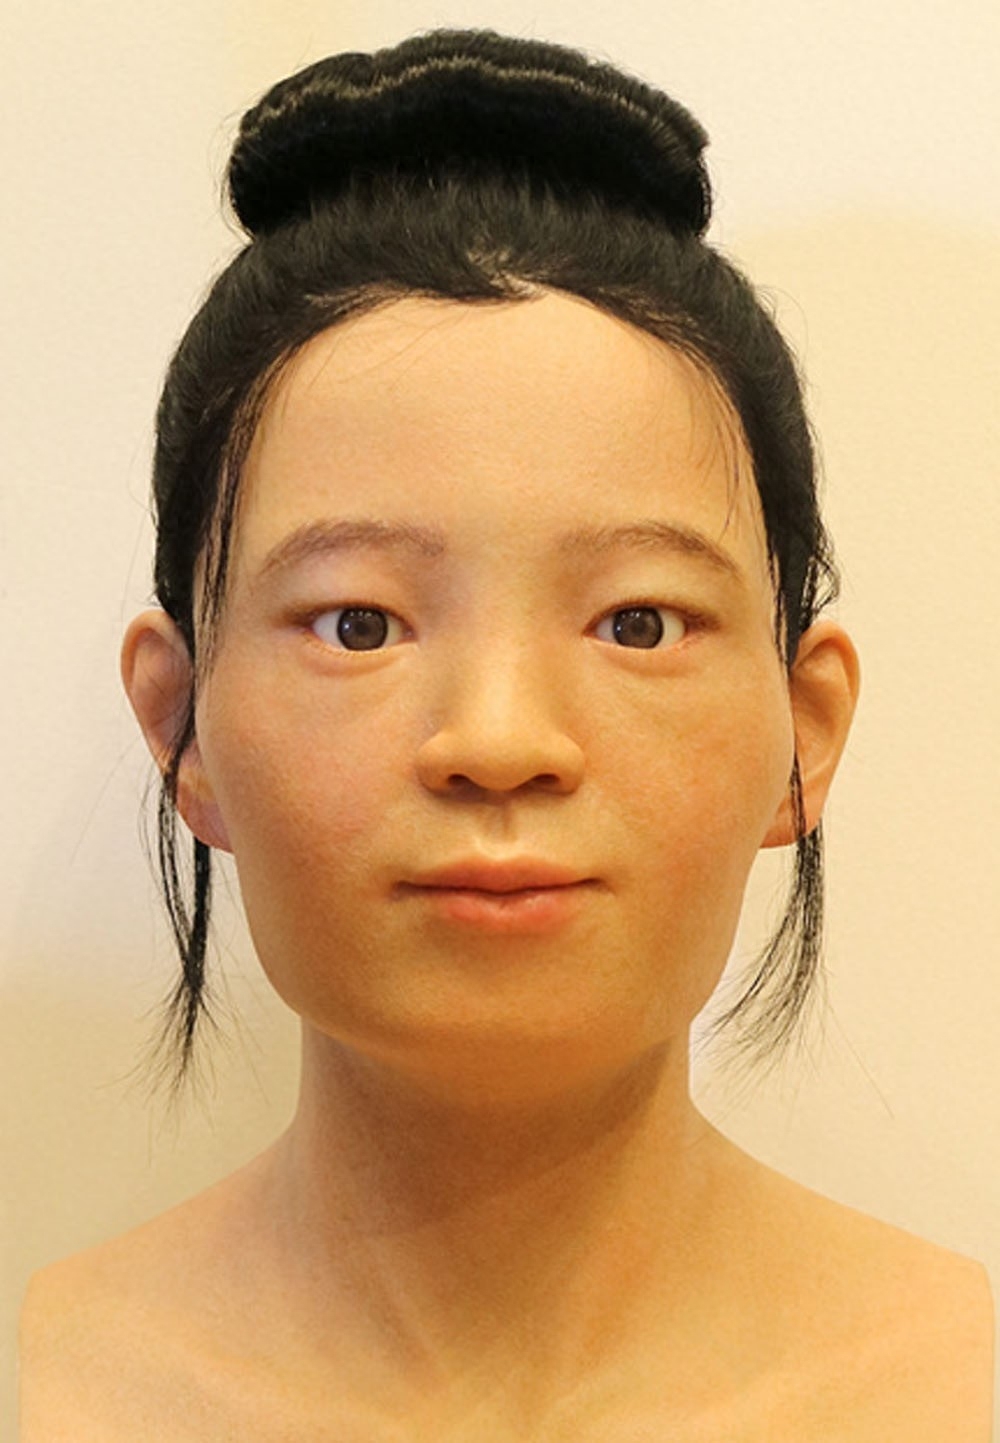 在大约公元前1000年,弥生人便以一支新的人群出现在了日本列岛